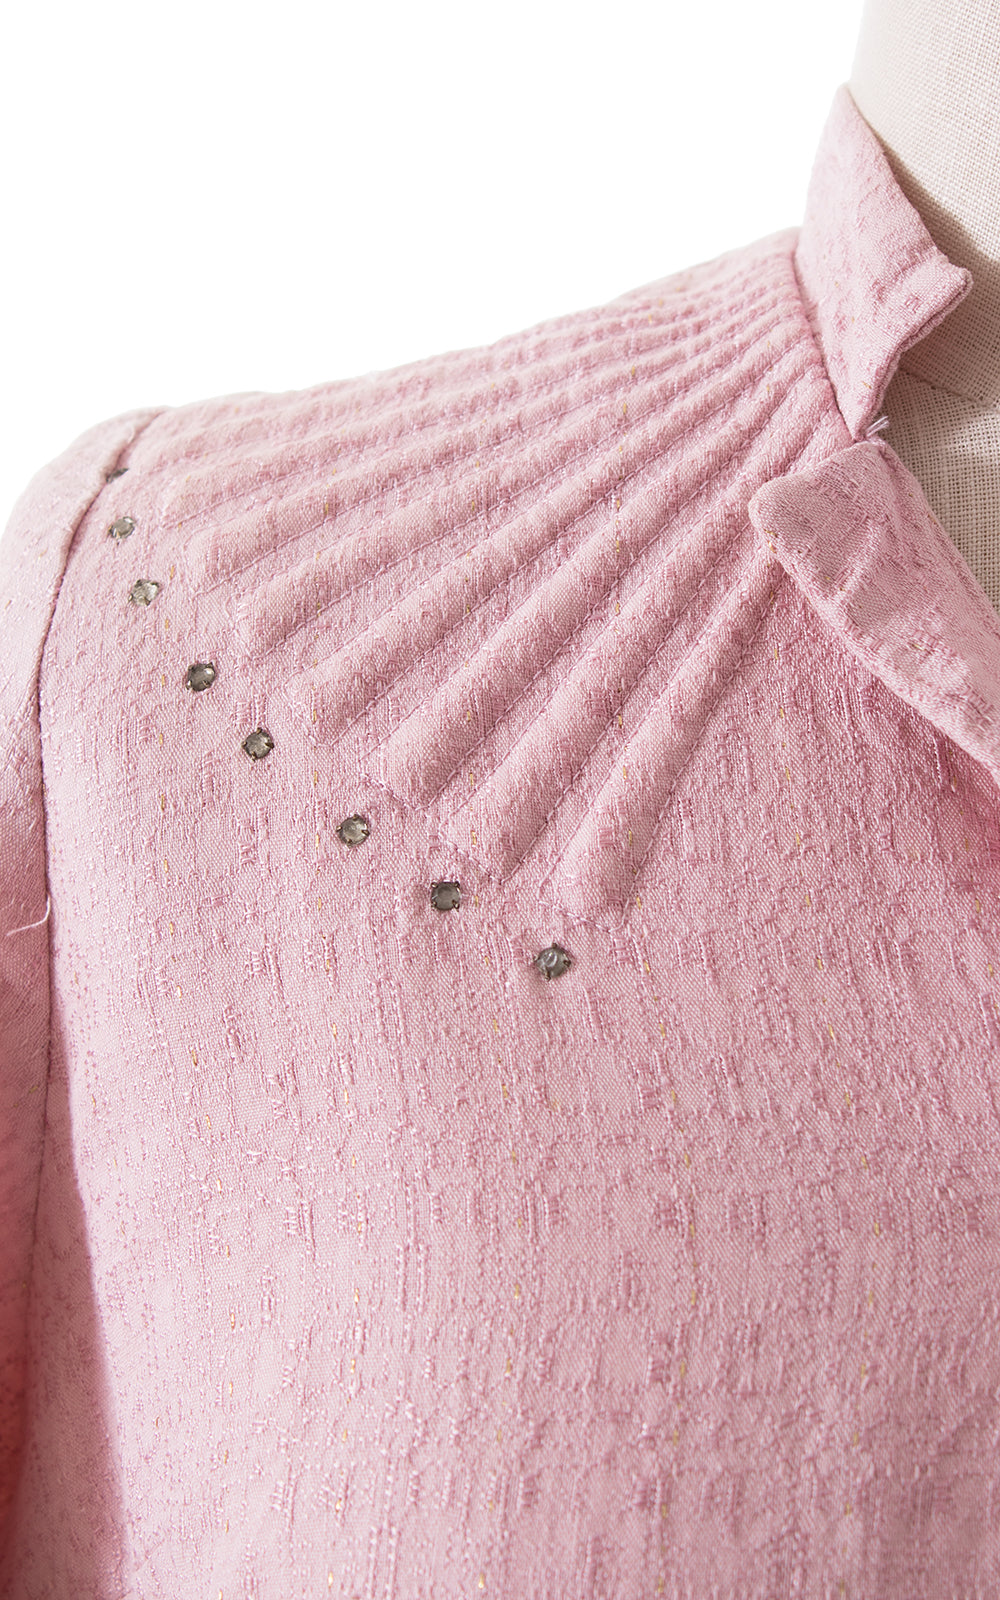 1950s Sparkly Pink Shirtwaist Dress